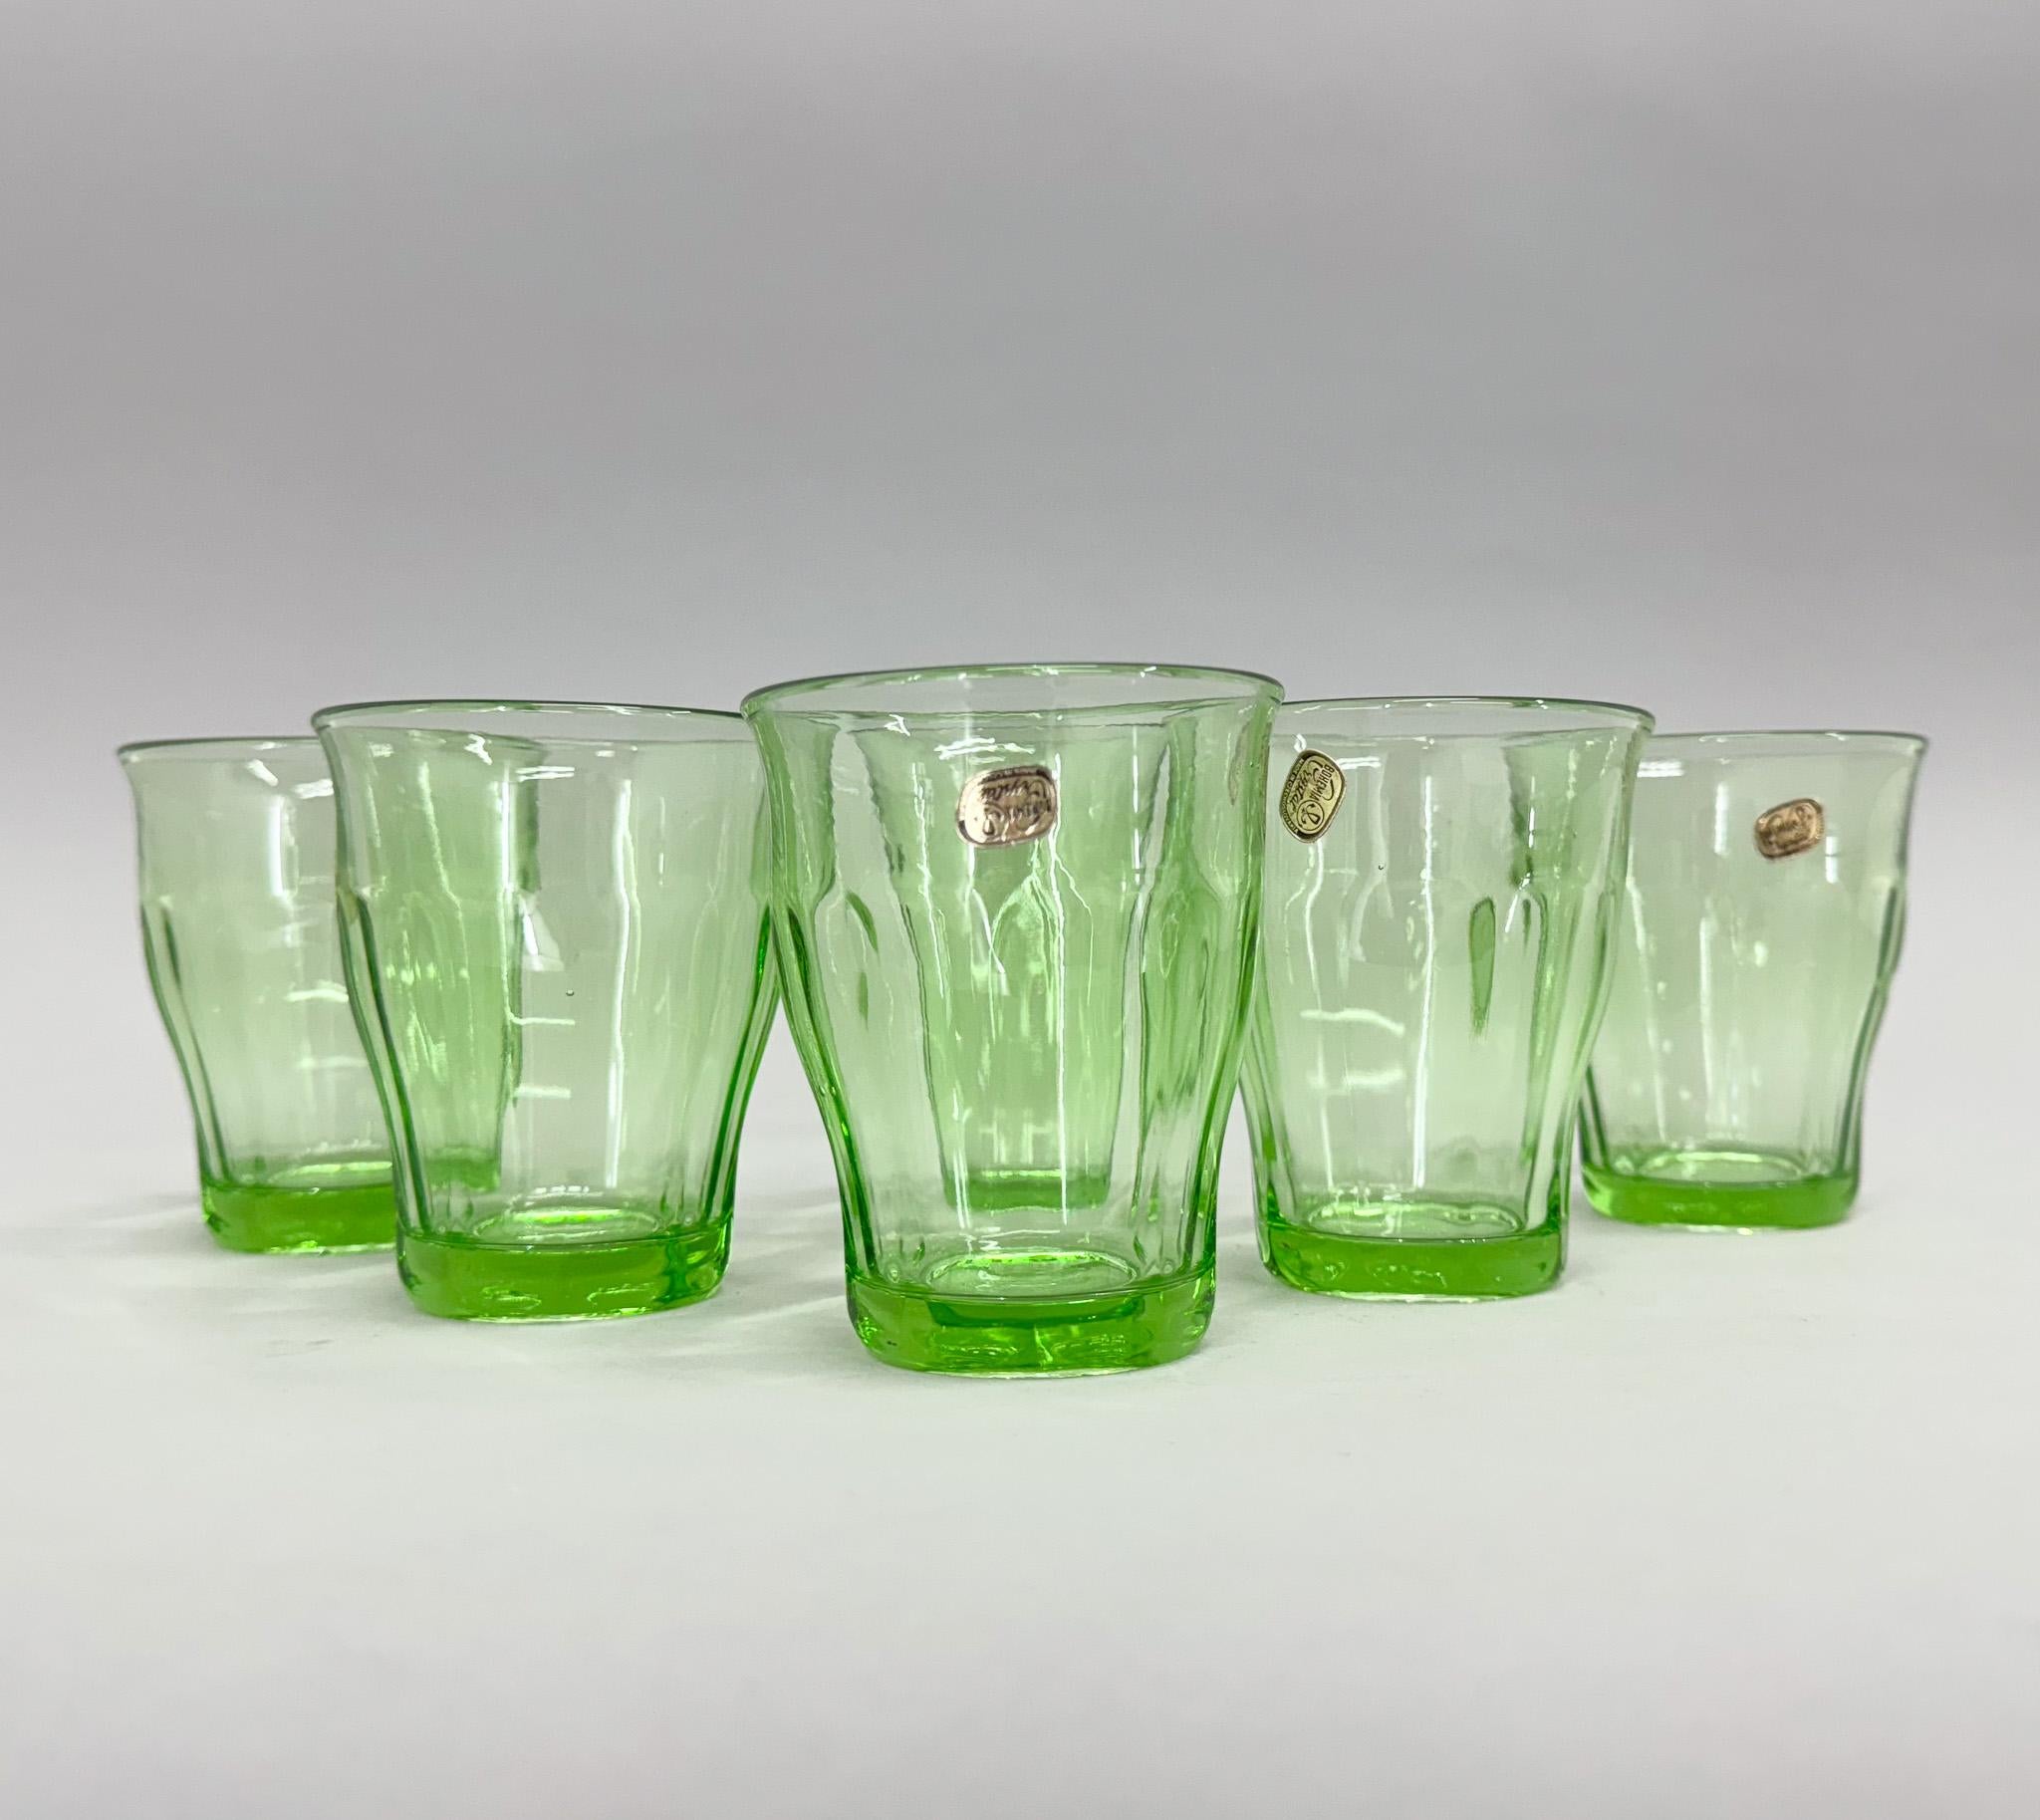 Satz von sechs Gläsern aus böhmischem Kristallglas, die in den 1970er Jahren in der ehemaligen Tschechoslowakei hergestellt wurden. Noch beschriftet, wahrscheinlich nie benutzt.